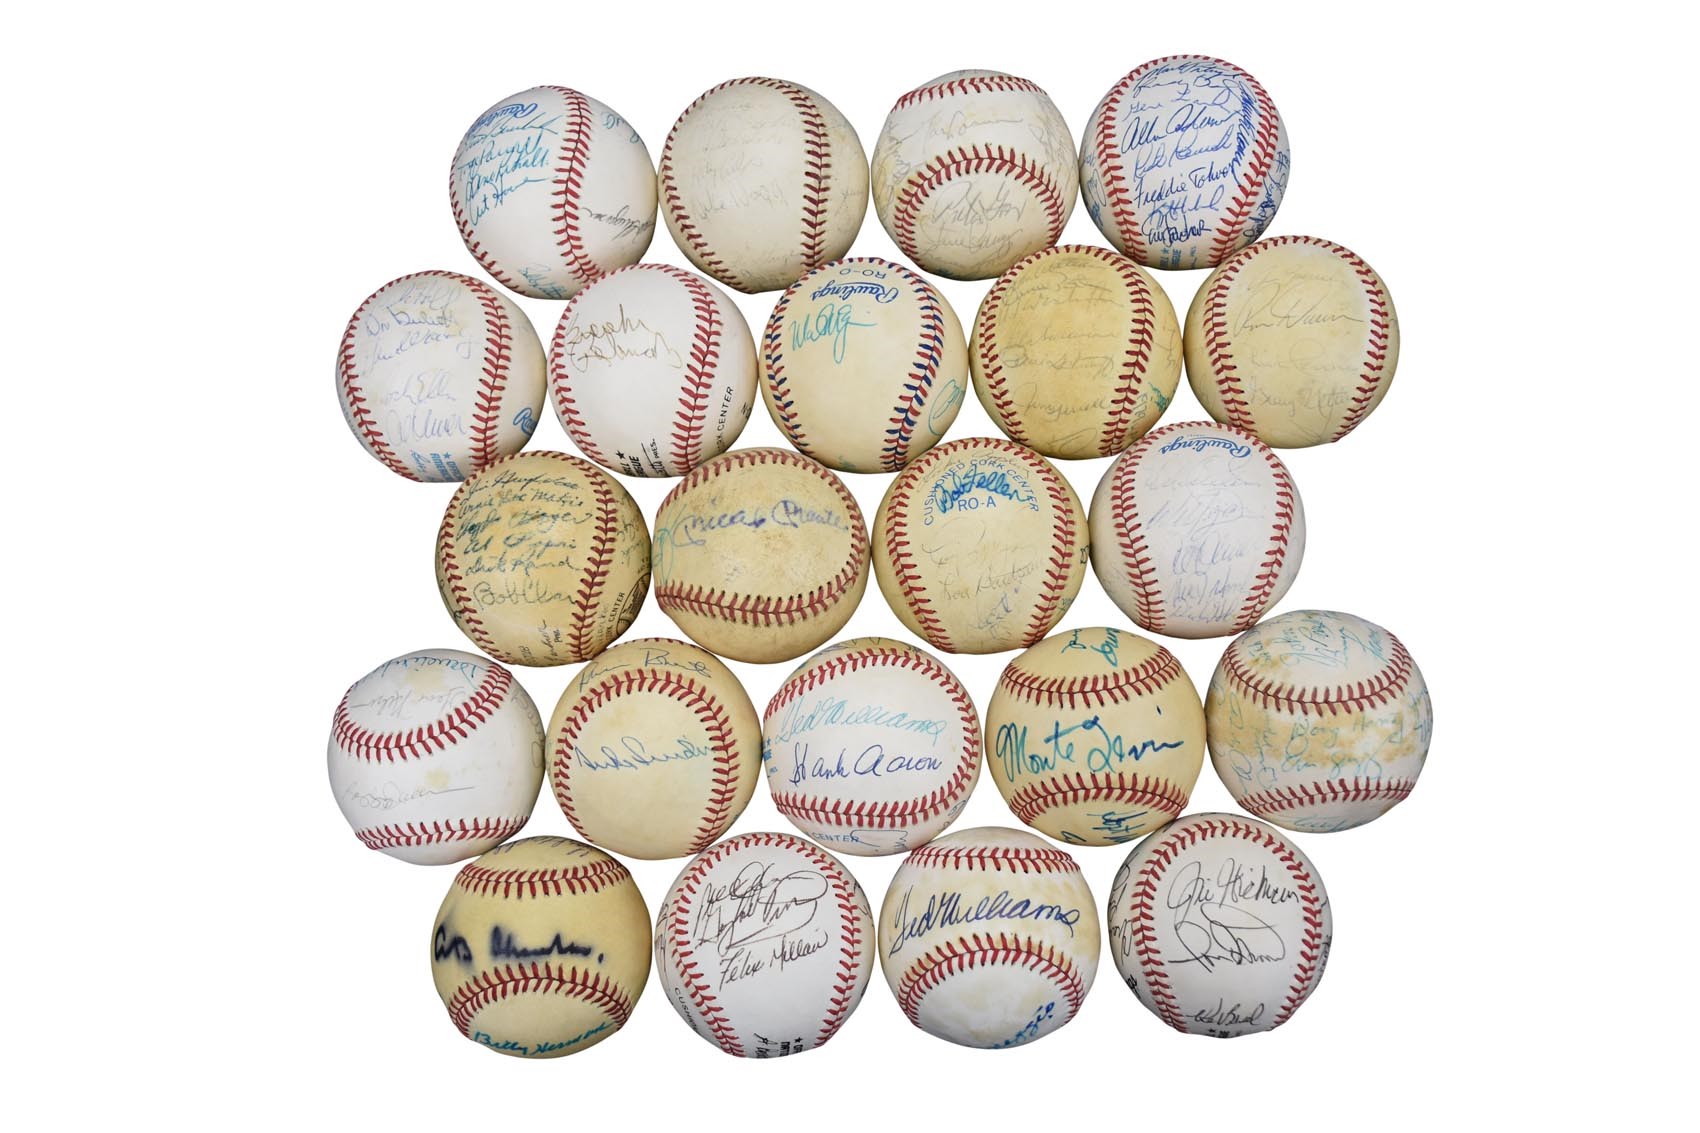 - Hall of Fame, Old Timers, Team & Multi-Signed Baseballs (35+)